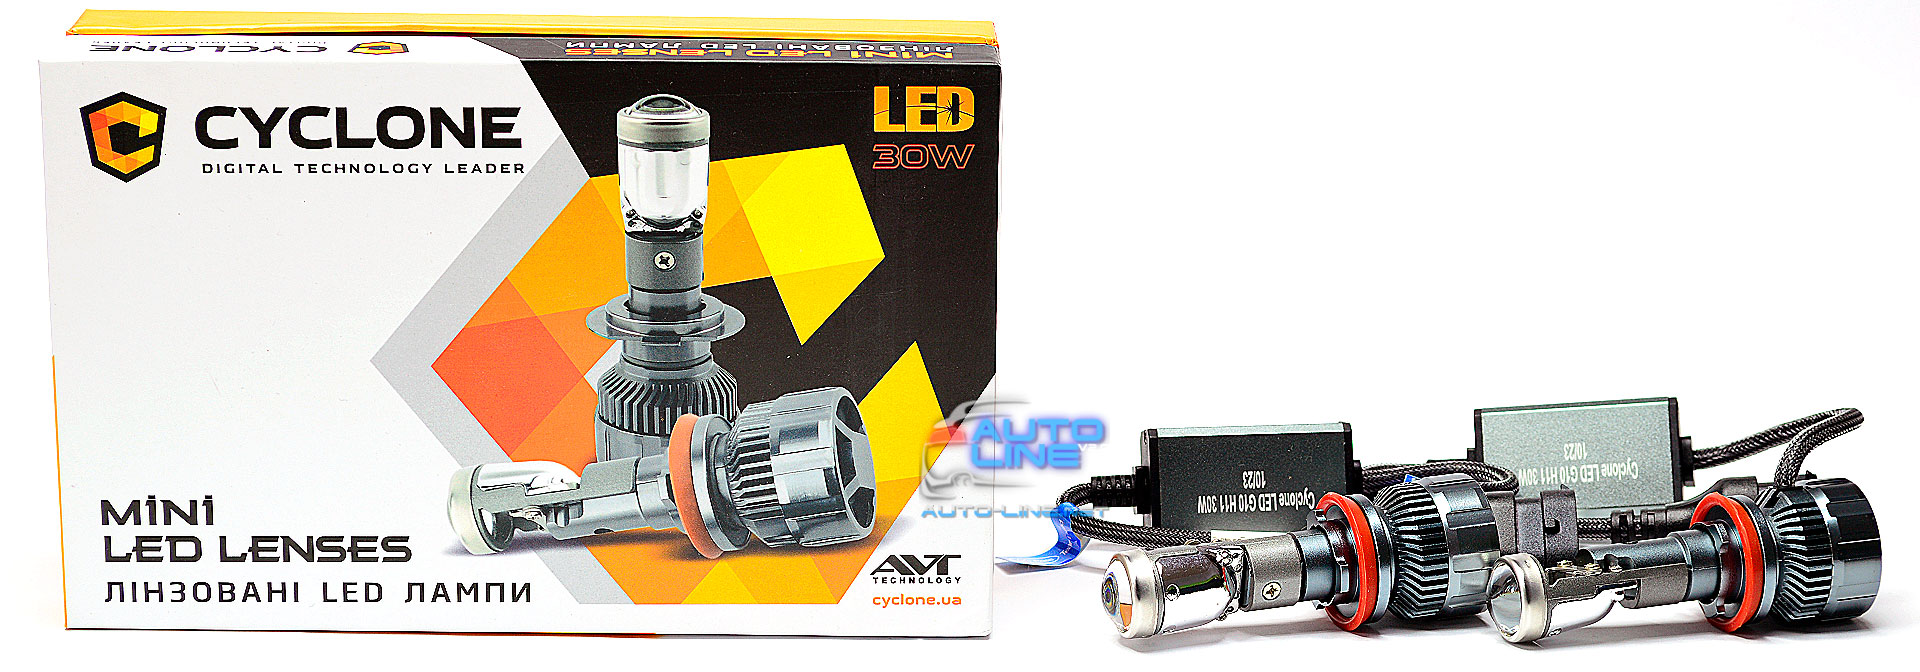 Cyclone LED G10 H11 30W — мини LED-линза H11 Bi-Led, светодиодная лампа-линза H11